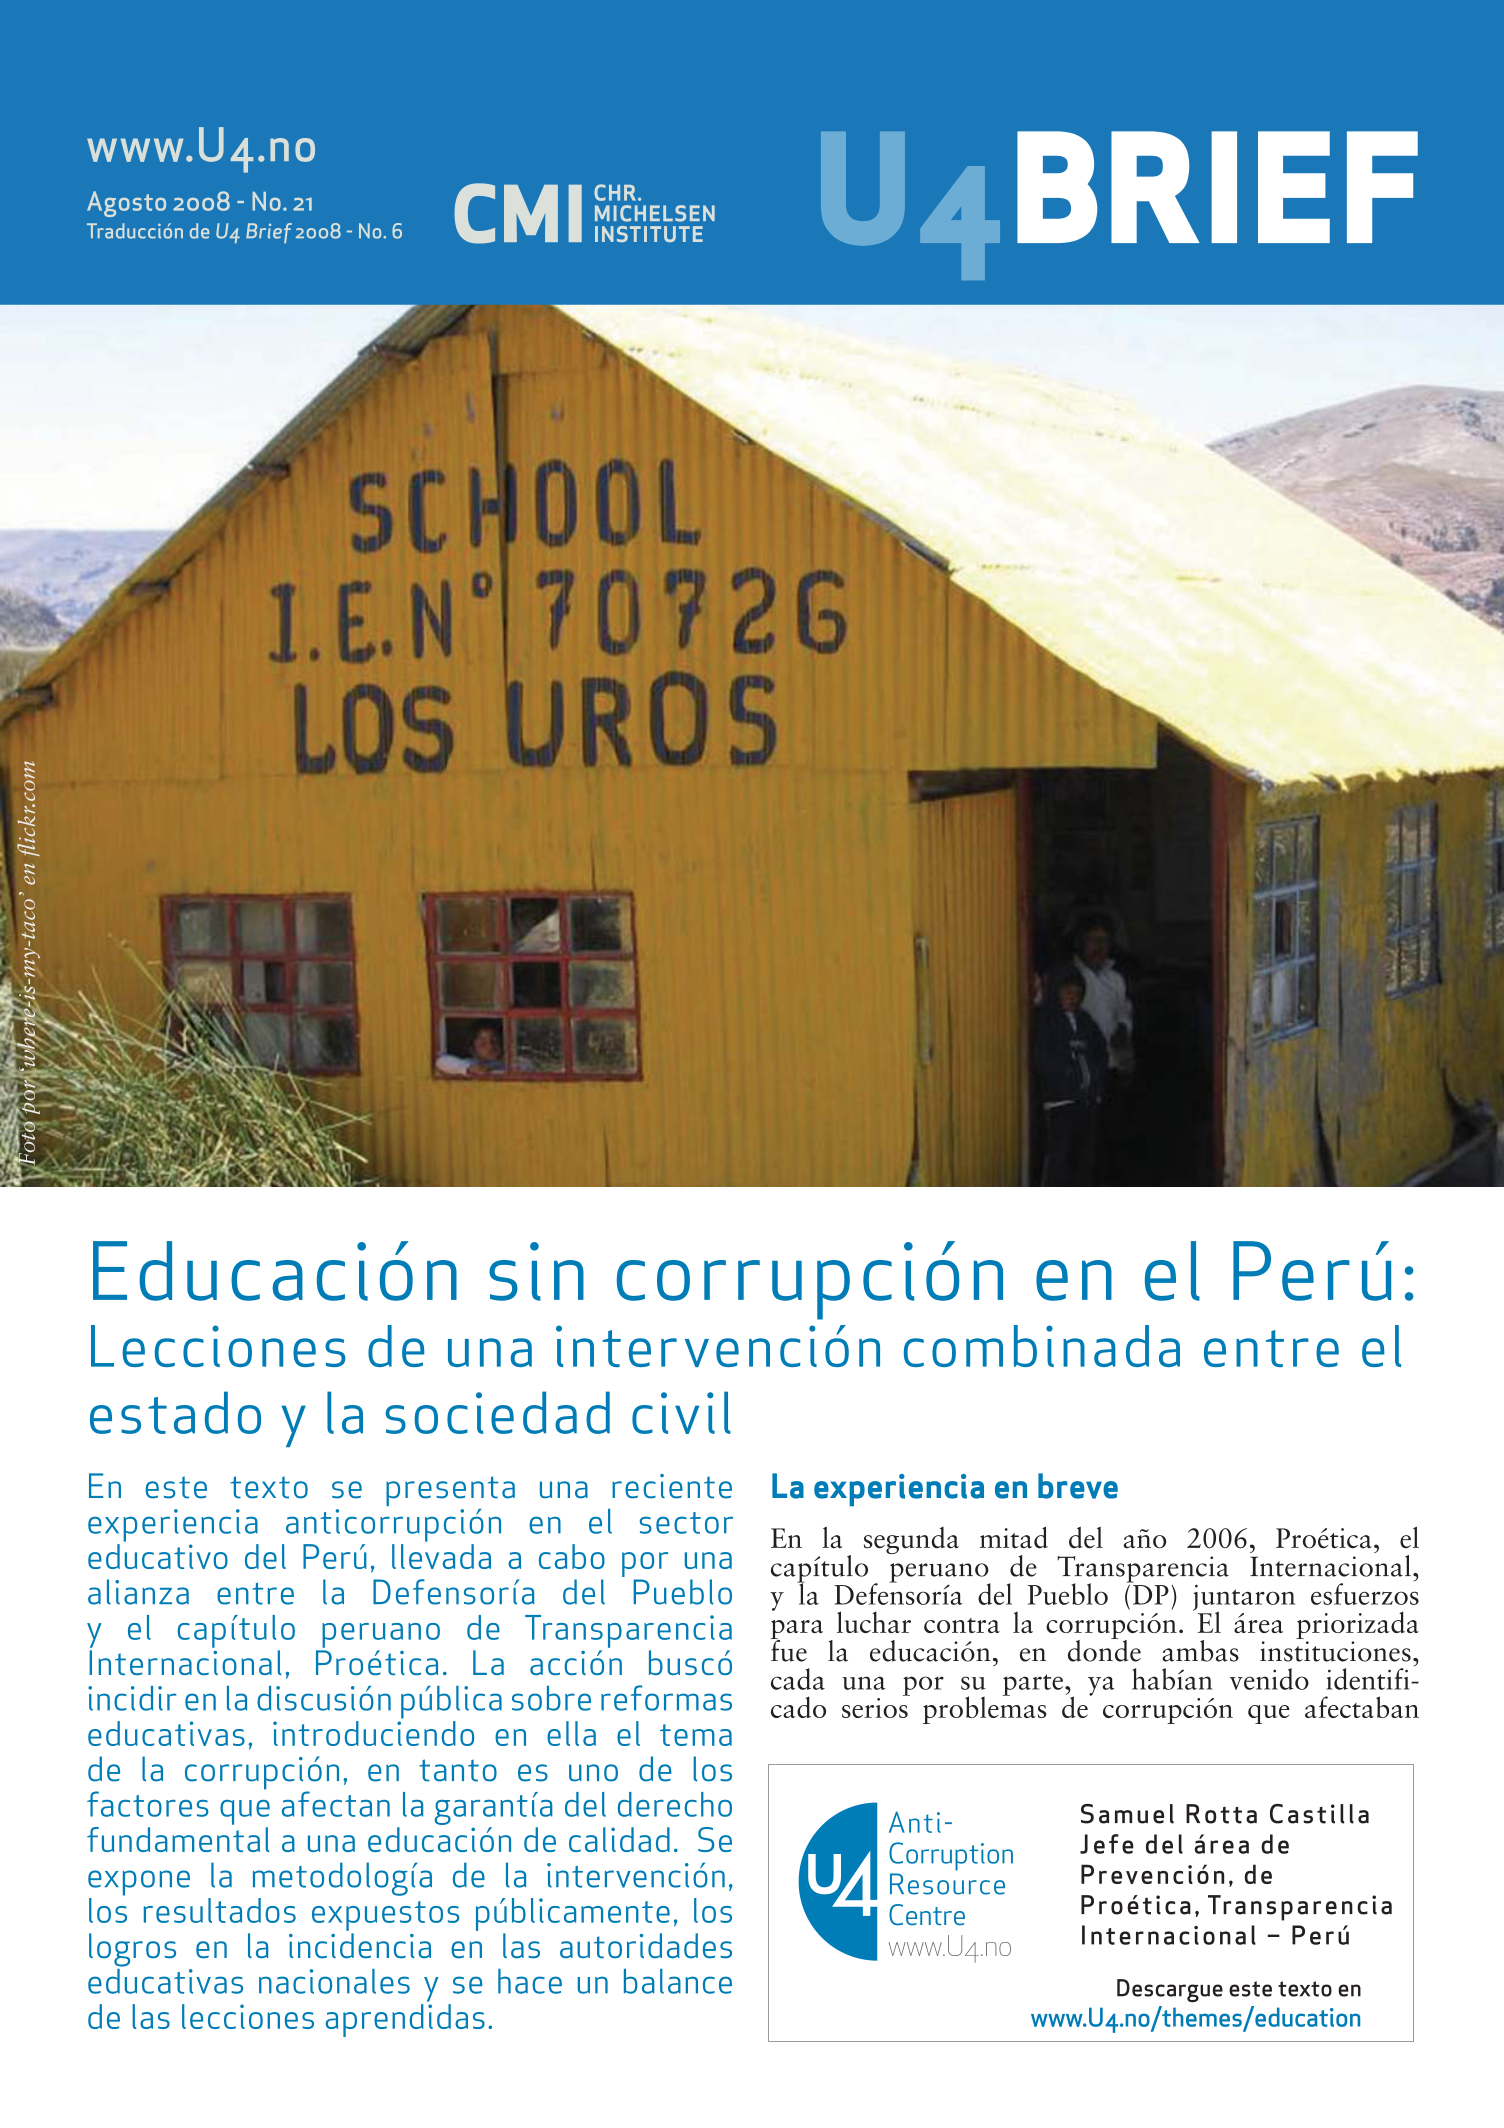 Educación sin corrupción en el Perú: Lecciones de una intervención combinada entre el estado y la sociedad civil